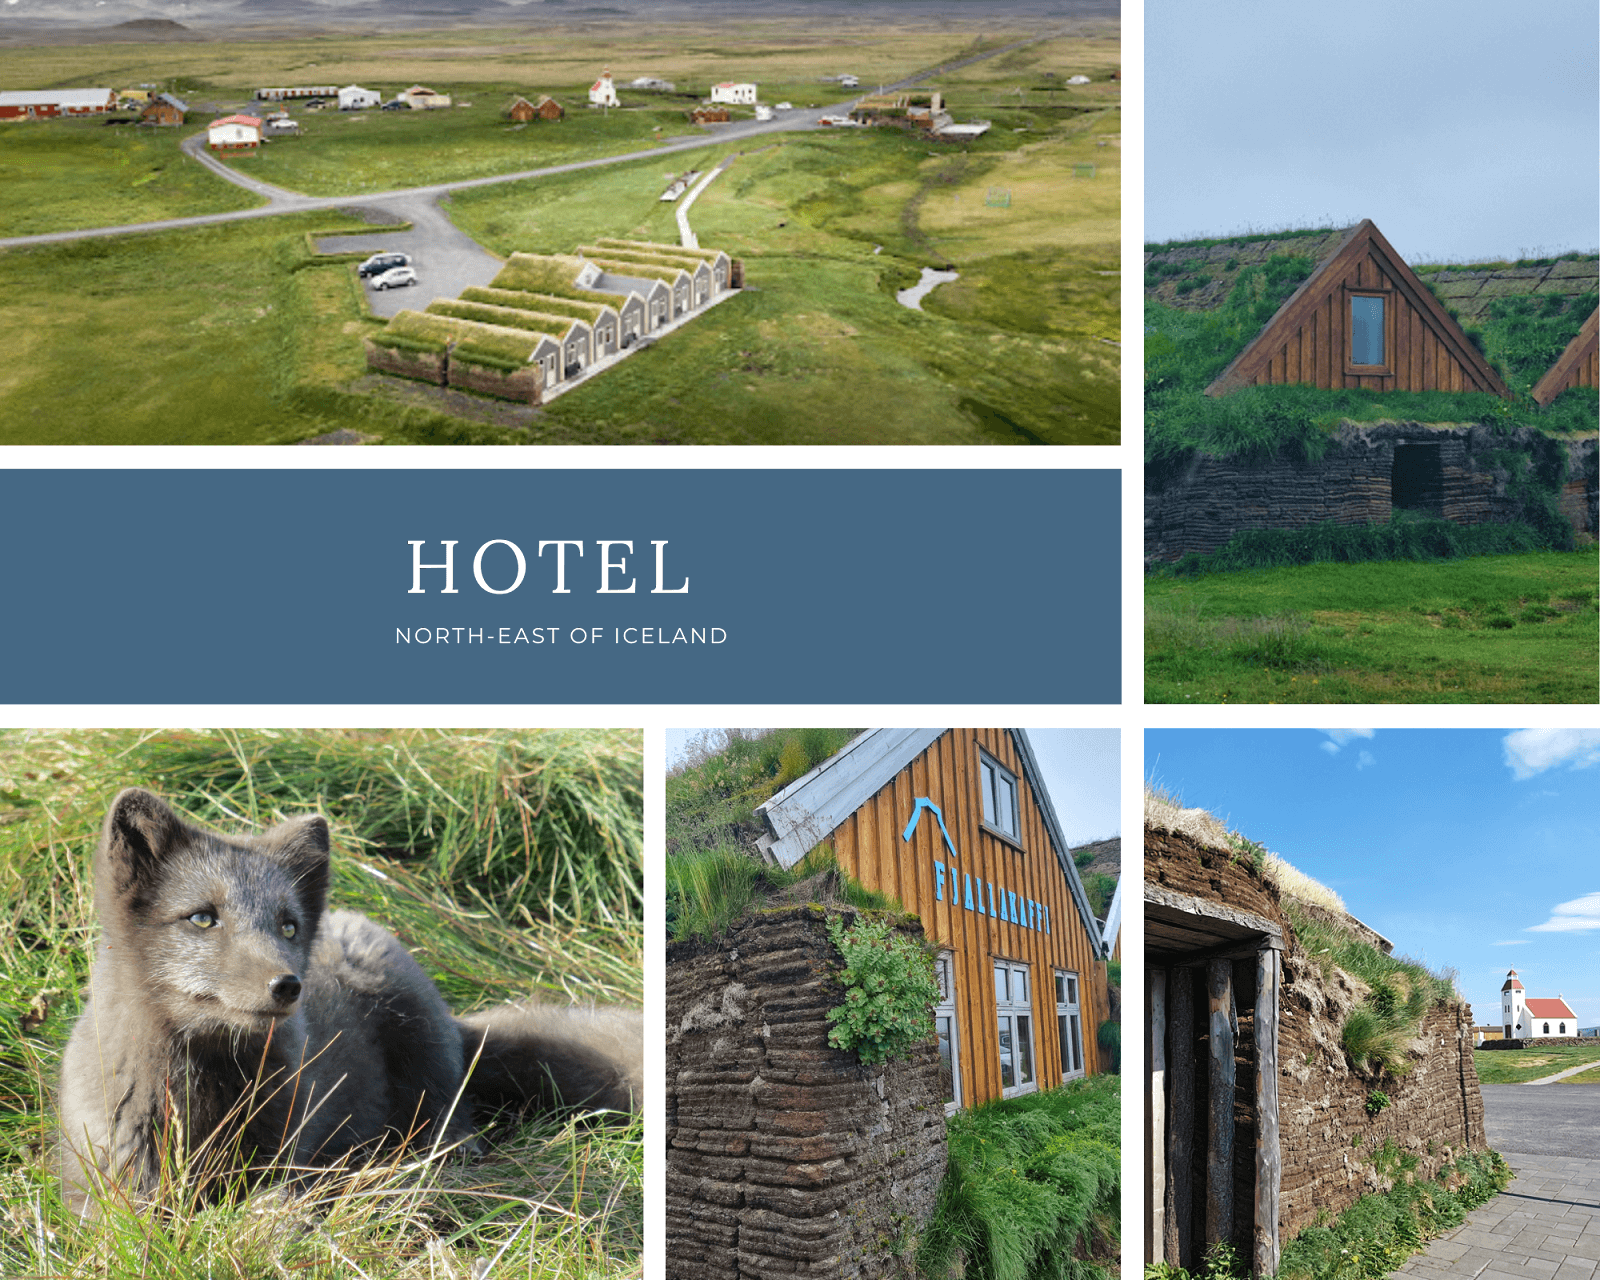 Hotel en granja en Islanidia